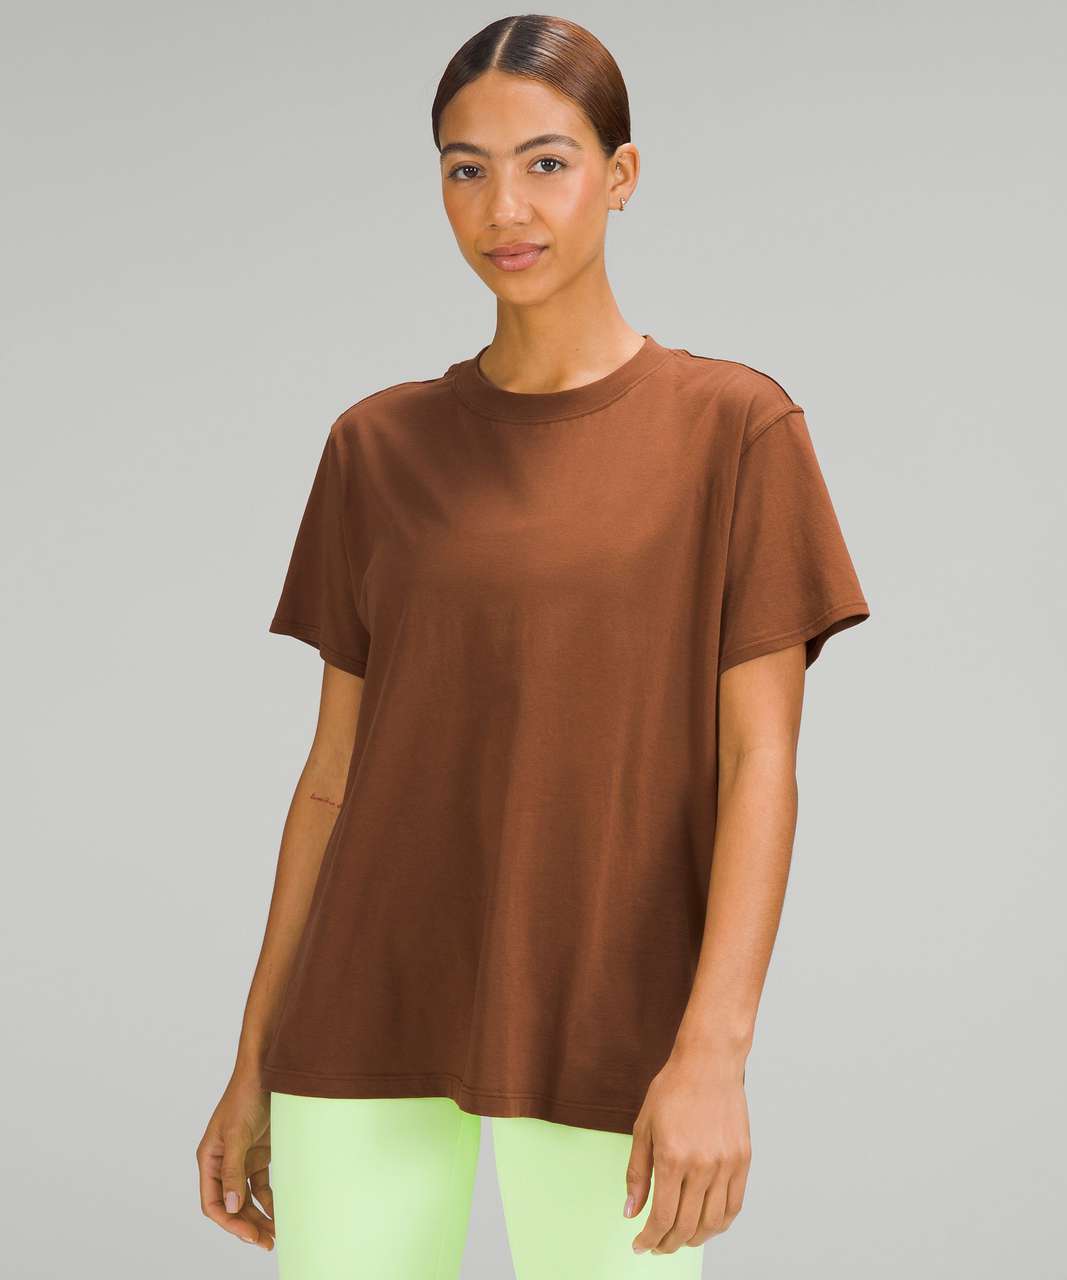 Brown Tee - Short Sleeve Top - Jersey Knit Top - Scoop Neck Top - Lulus